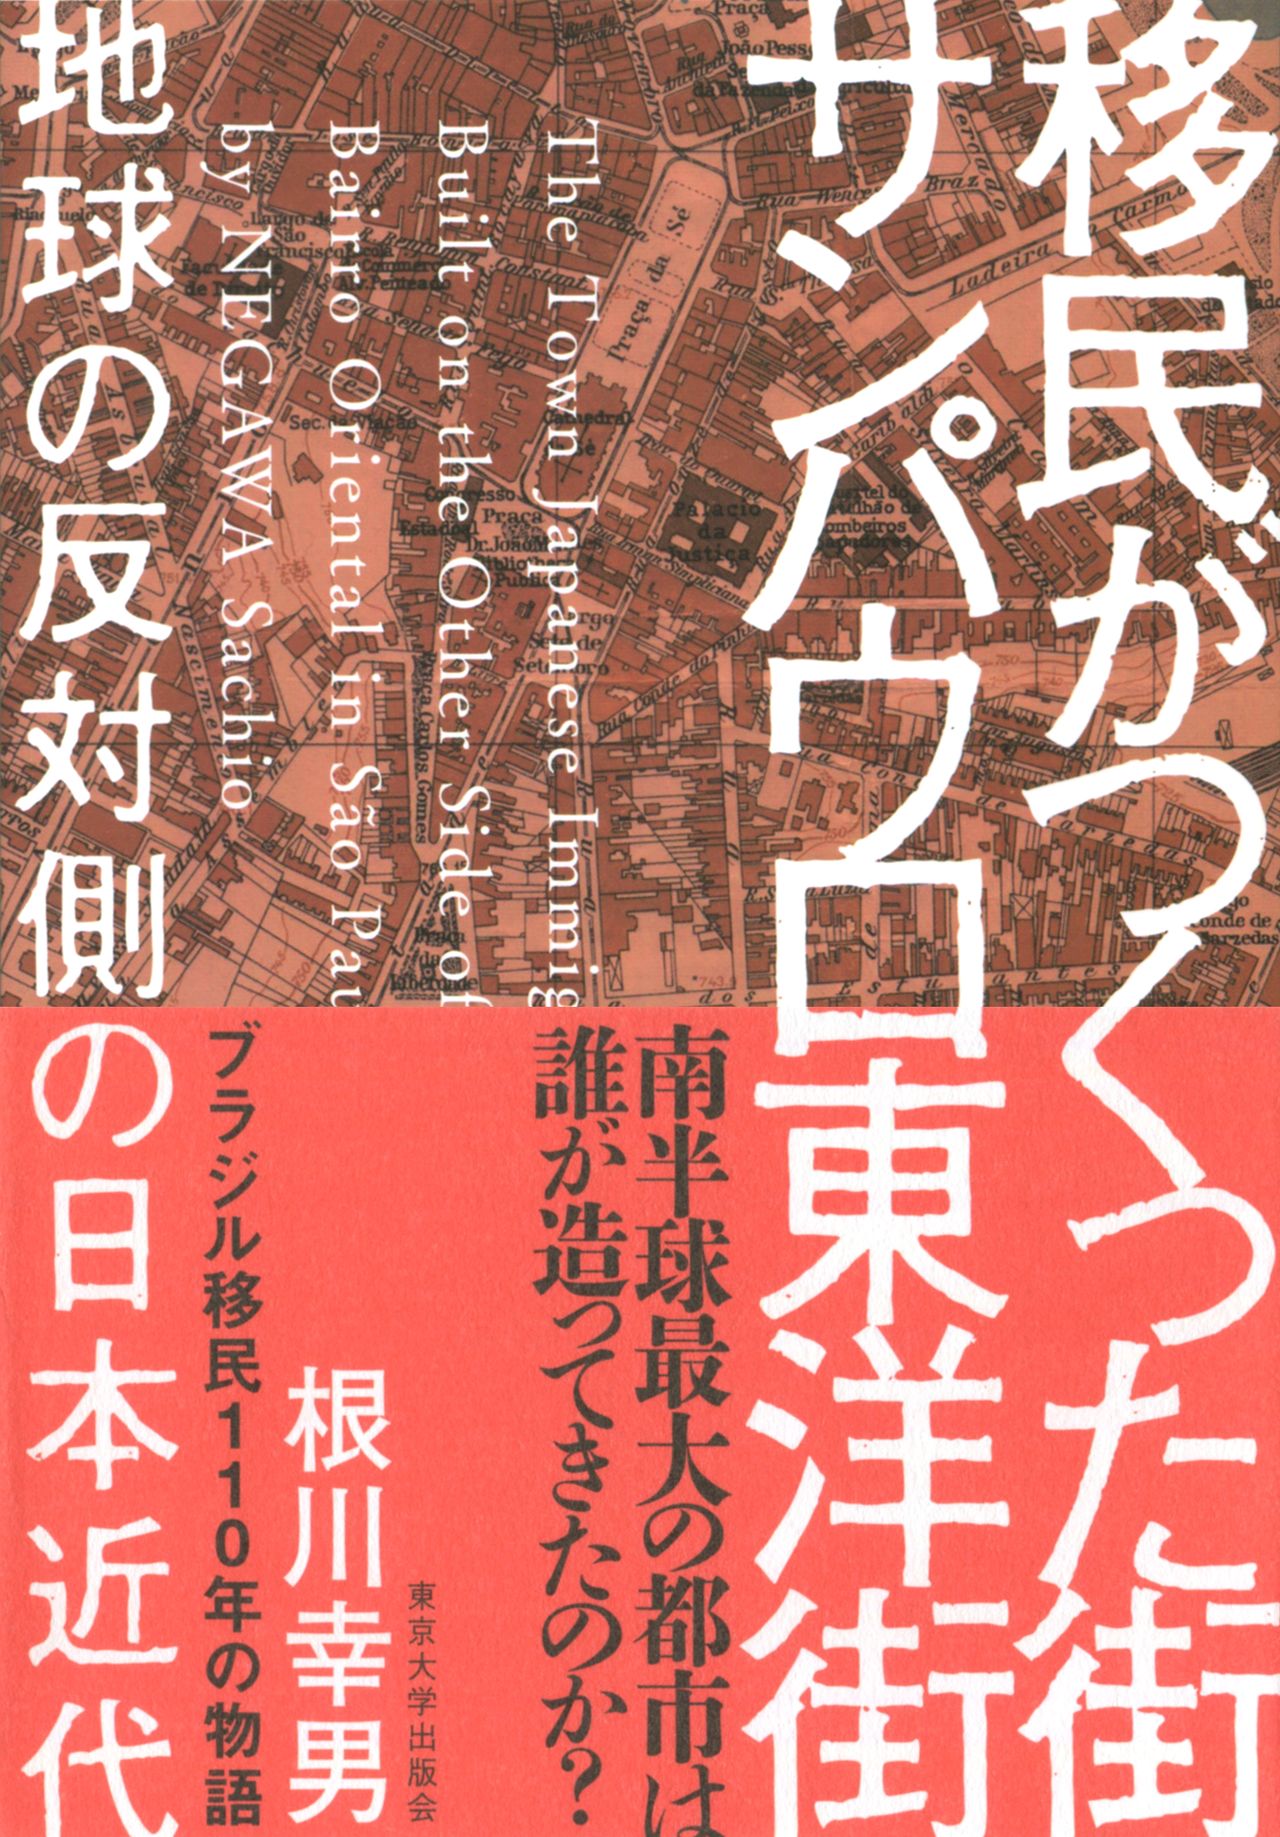 Le livre ci-dessus a été publié par Negawa Sachio en 2020 (aux éditions Tôkyô daigaku shuppankai). Il est consacré à l’histoire du quartier de la Liberdade, comme l’indique son titre : « Le Bairro oriental de São Paulo : un quartier créé à l’époque moderne par des émigrés japonais, à l’autre bout de la planète » (Imin ga tsukutta machi san pauro tôyôgai : chikyû no hantaigawa no Nihon kindai).